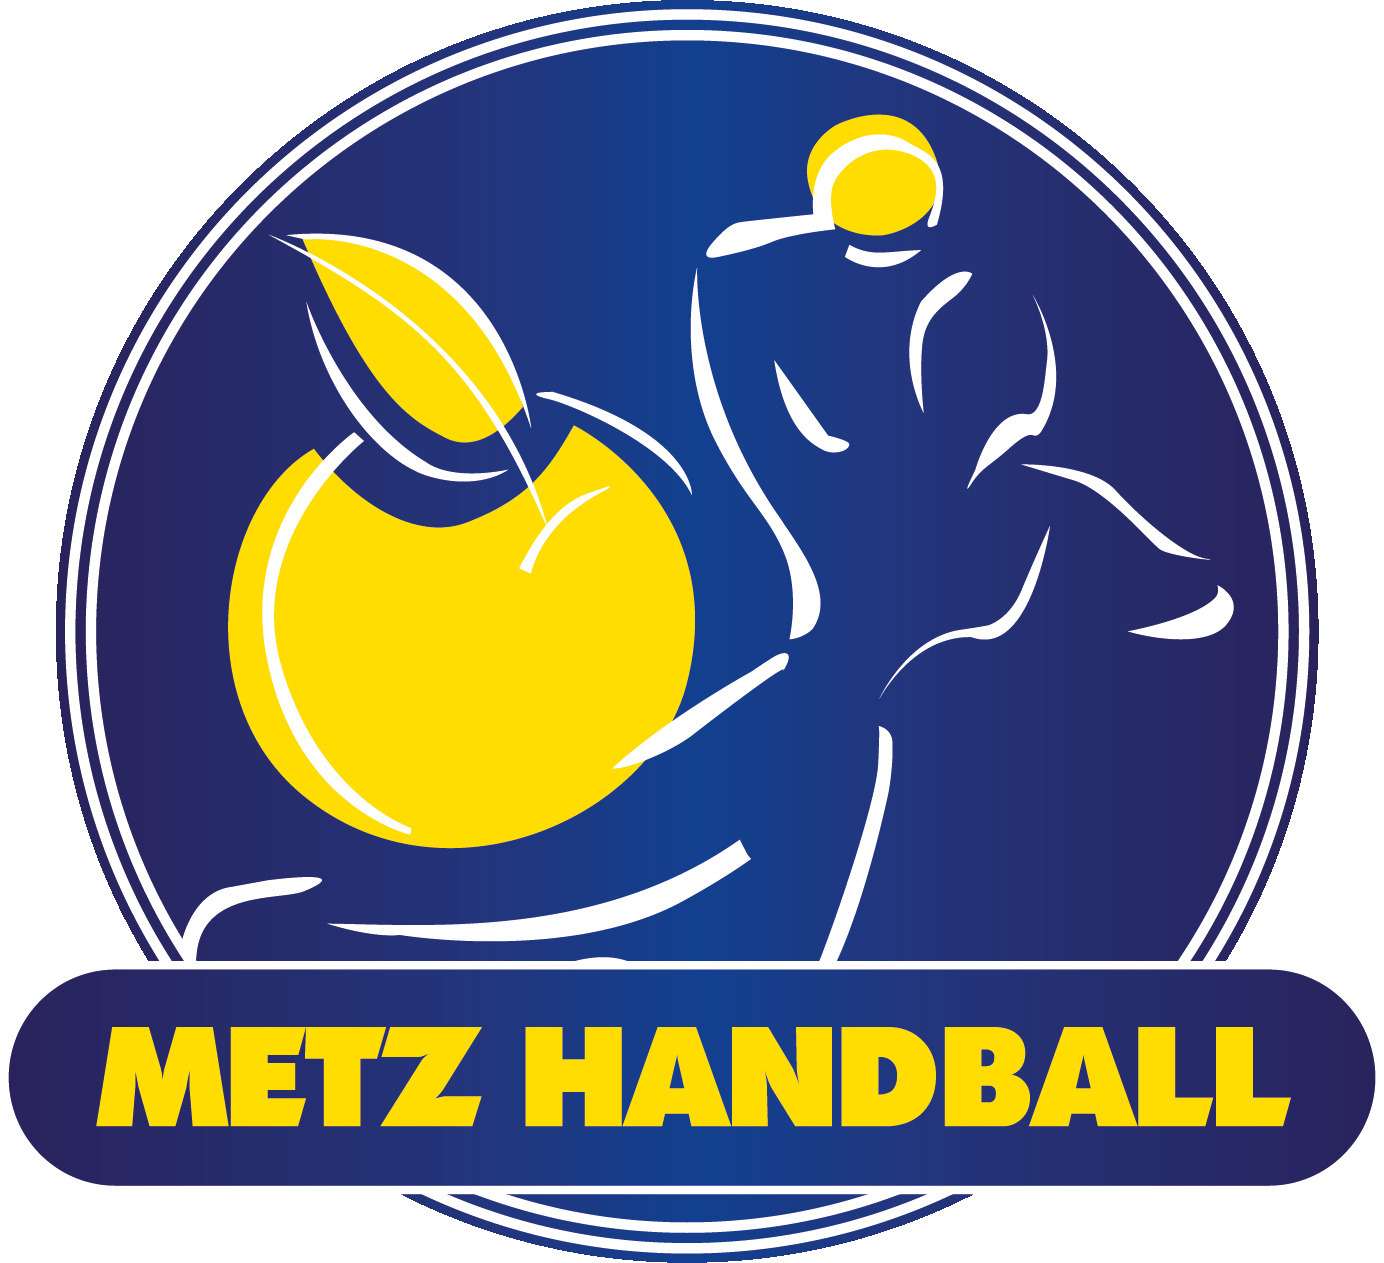 Metz Handball - Chambray Touraine Handball